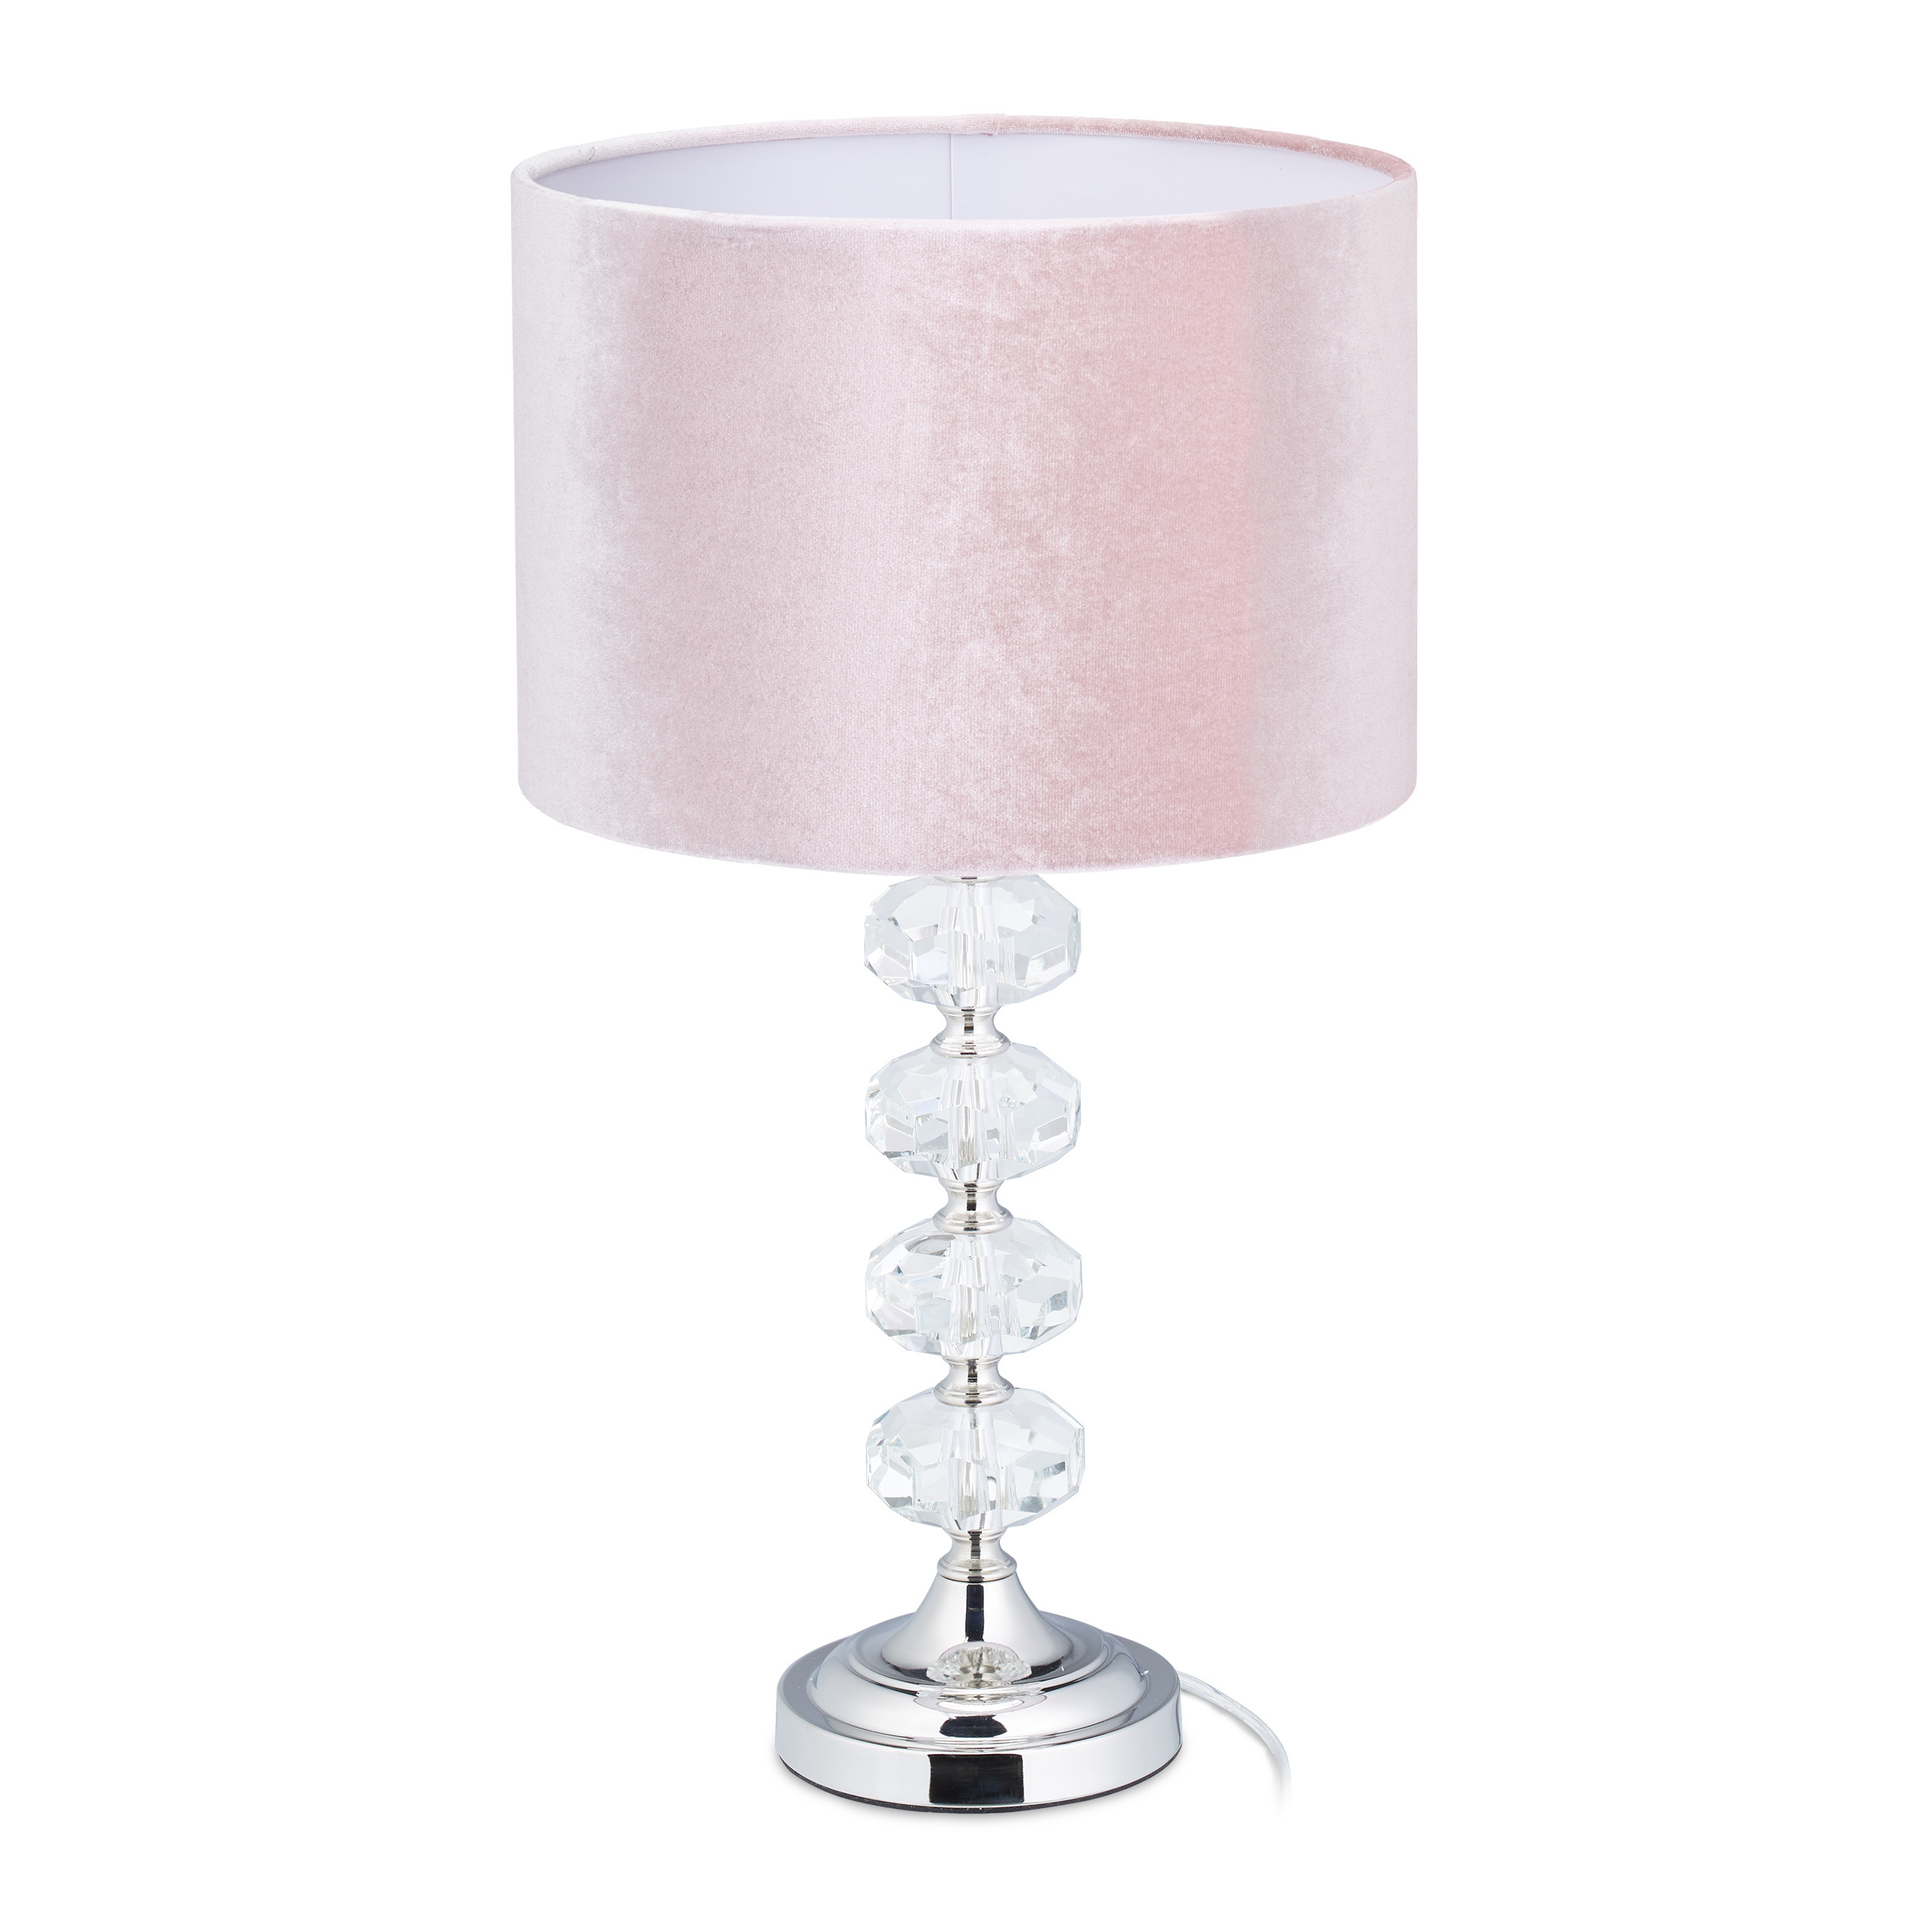 Tischlampe Kristall und Samt in Rosa kaufen | home24